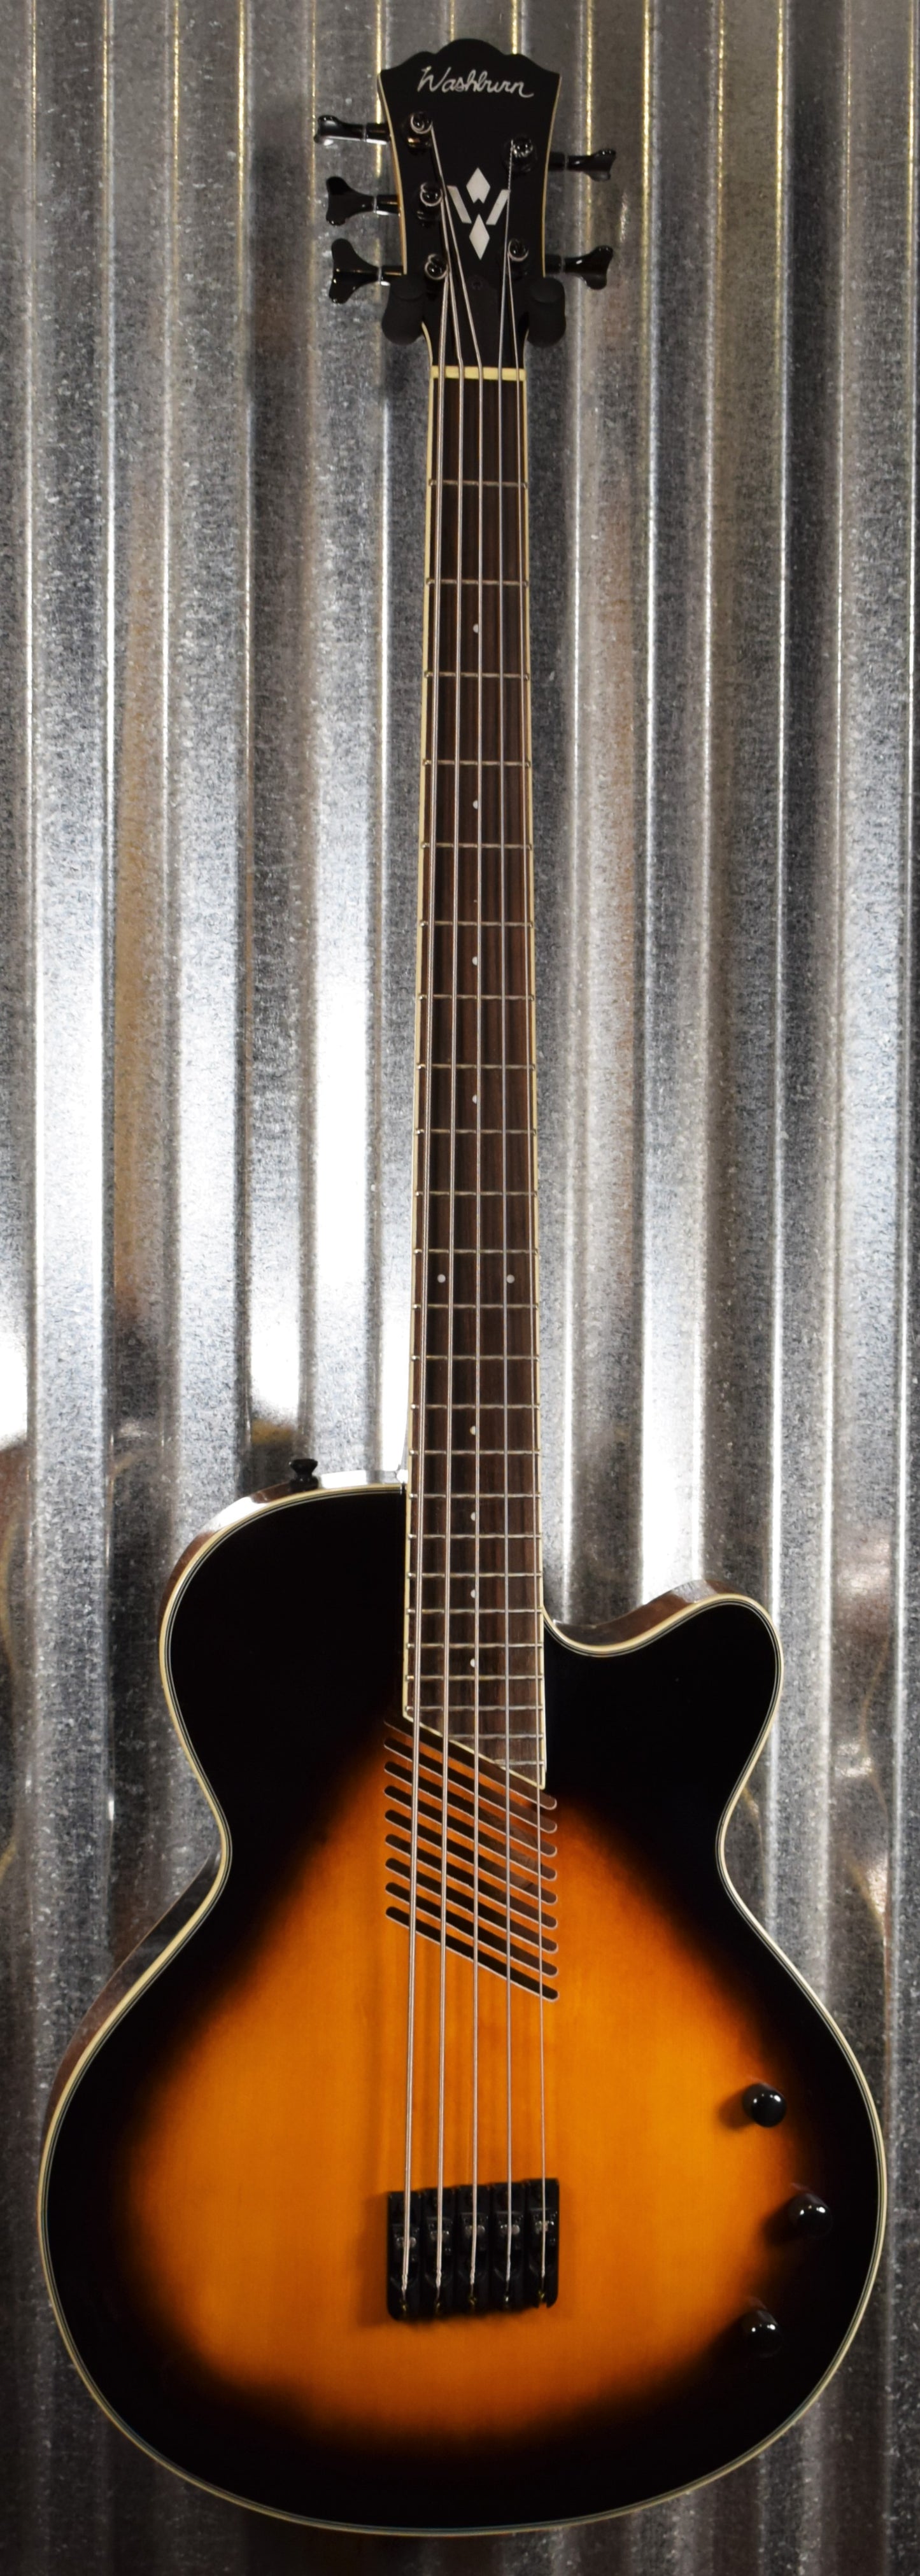 Washburn AB45VSK 5 String Cutaway Acoustic Electric Vintage Sunburst Bass & Case #0005 Used